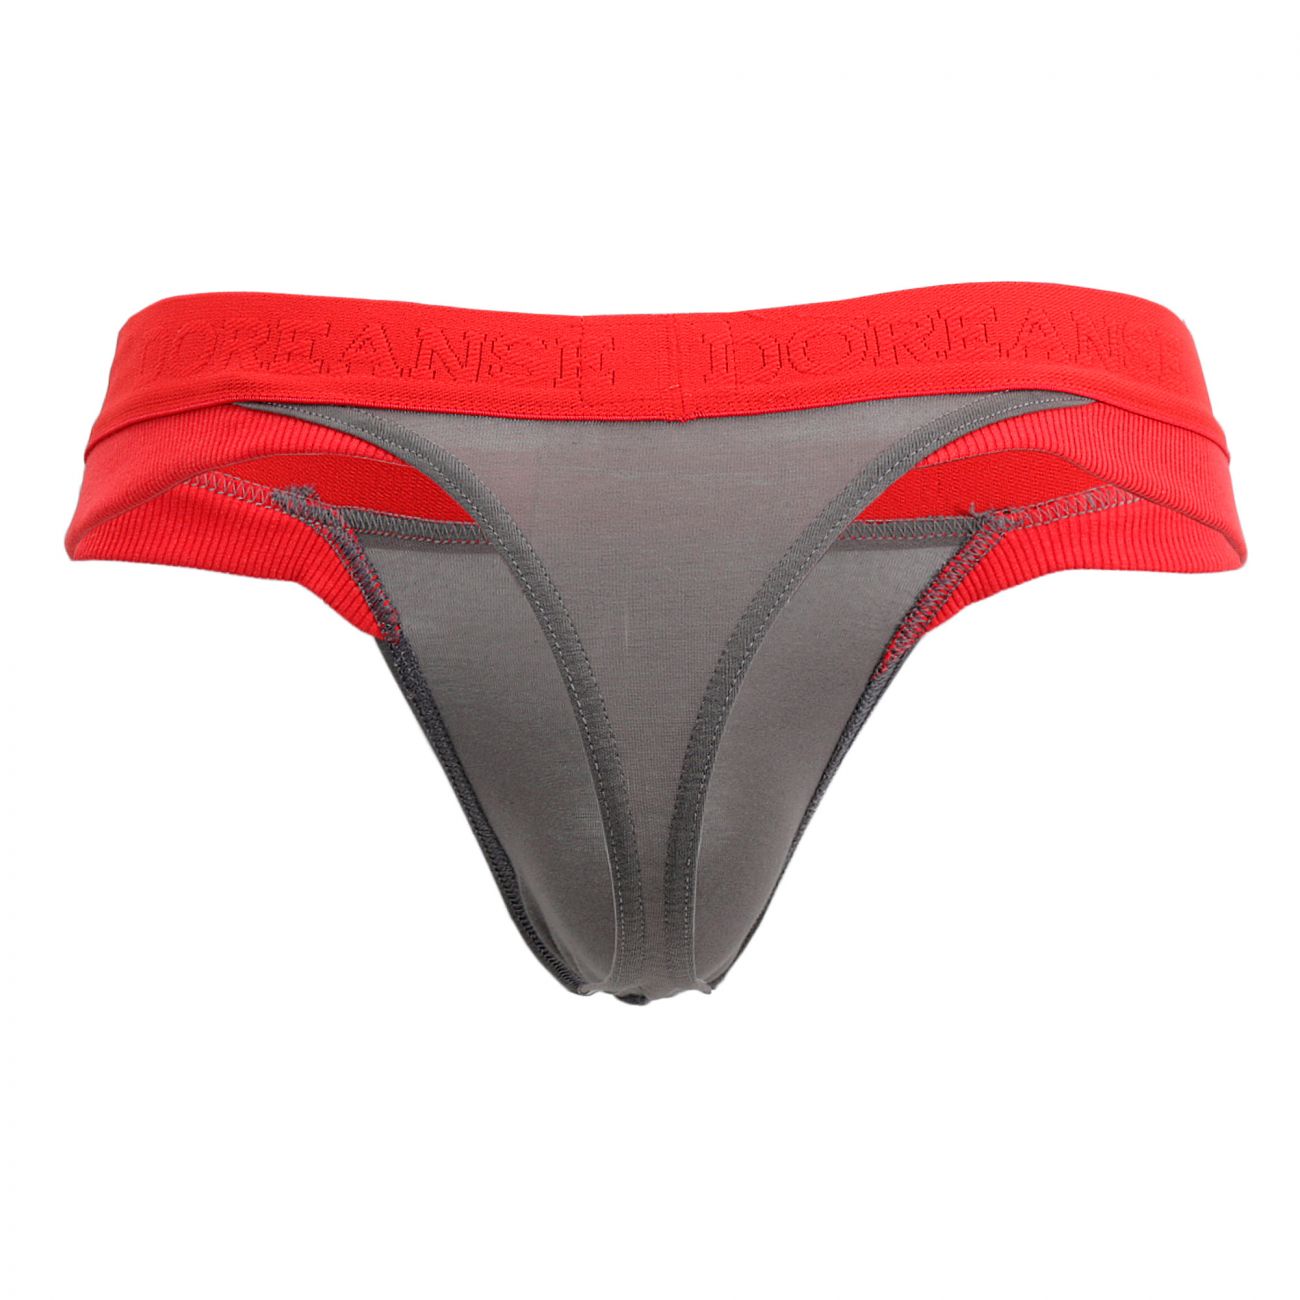 Mens Underwear: Doreanse 1258-SMK Warrior Thong | eBay